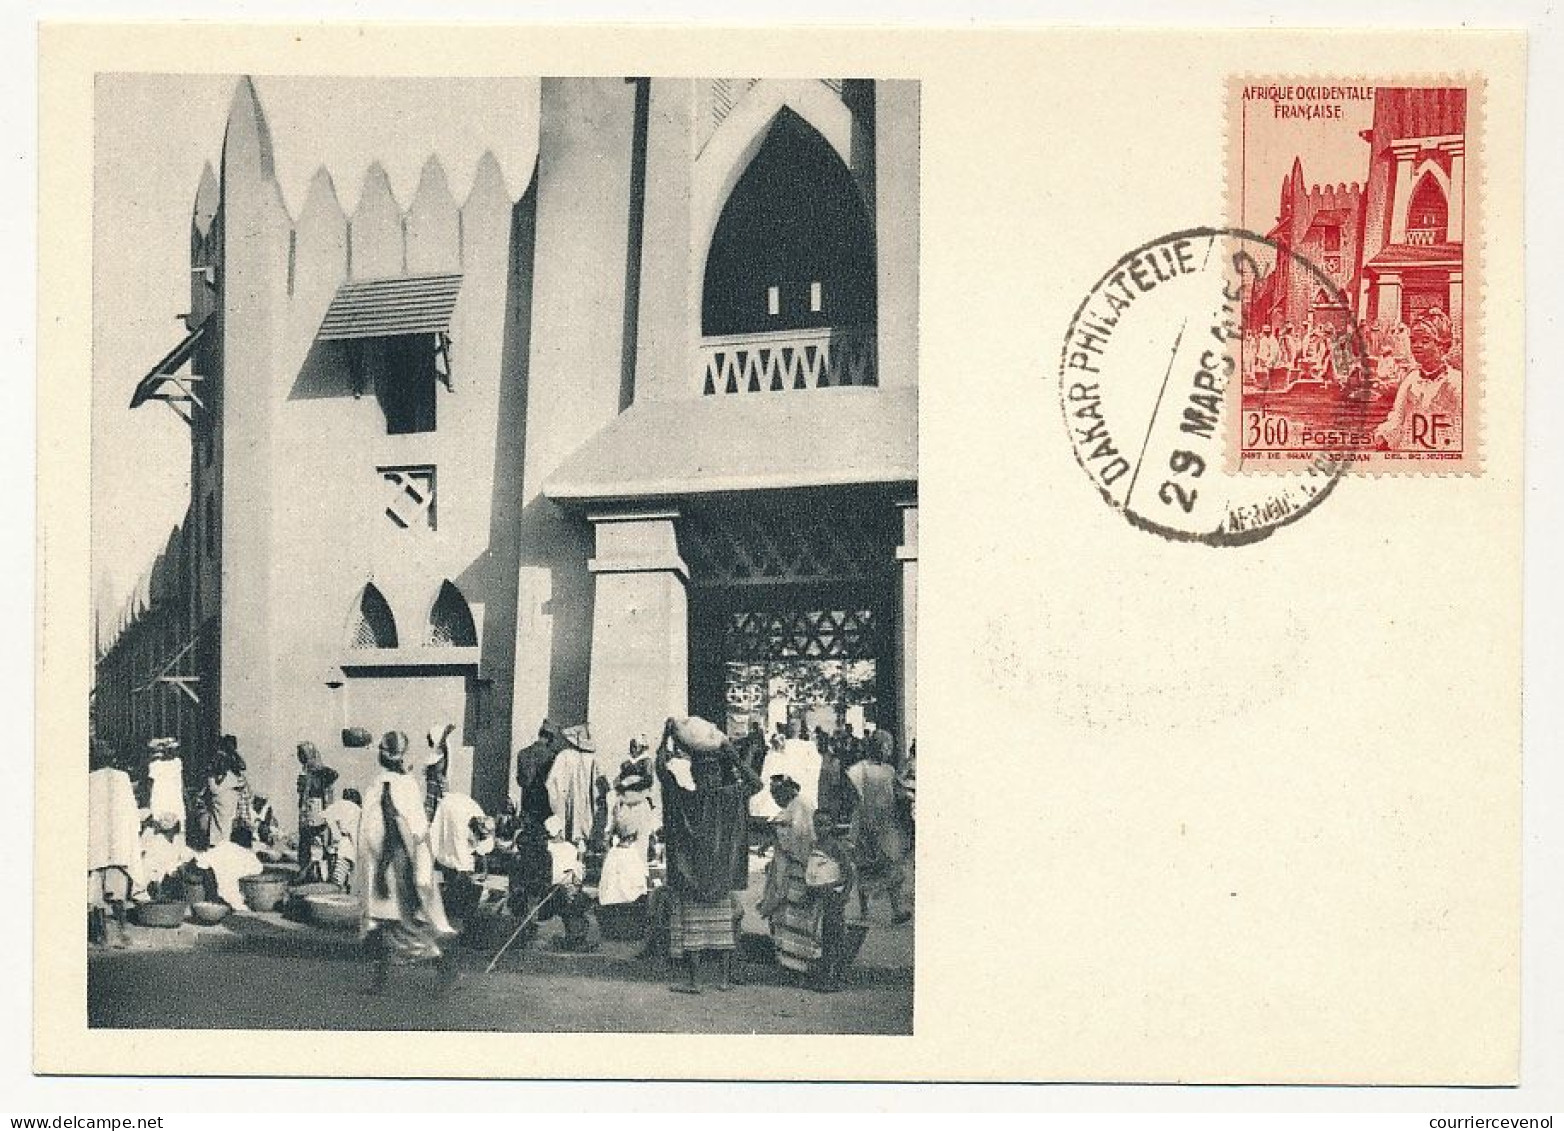 AOF => Carte Maximum Publicitaire IONYL - Soudan Français - Le Marché De Bamako - (DAKAR) 1952 - Briefe U. Dokumente